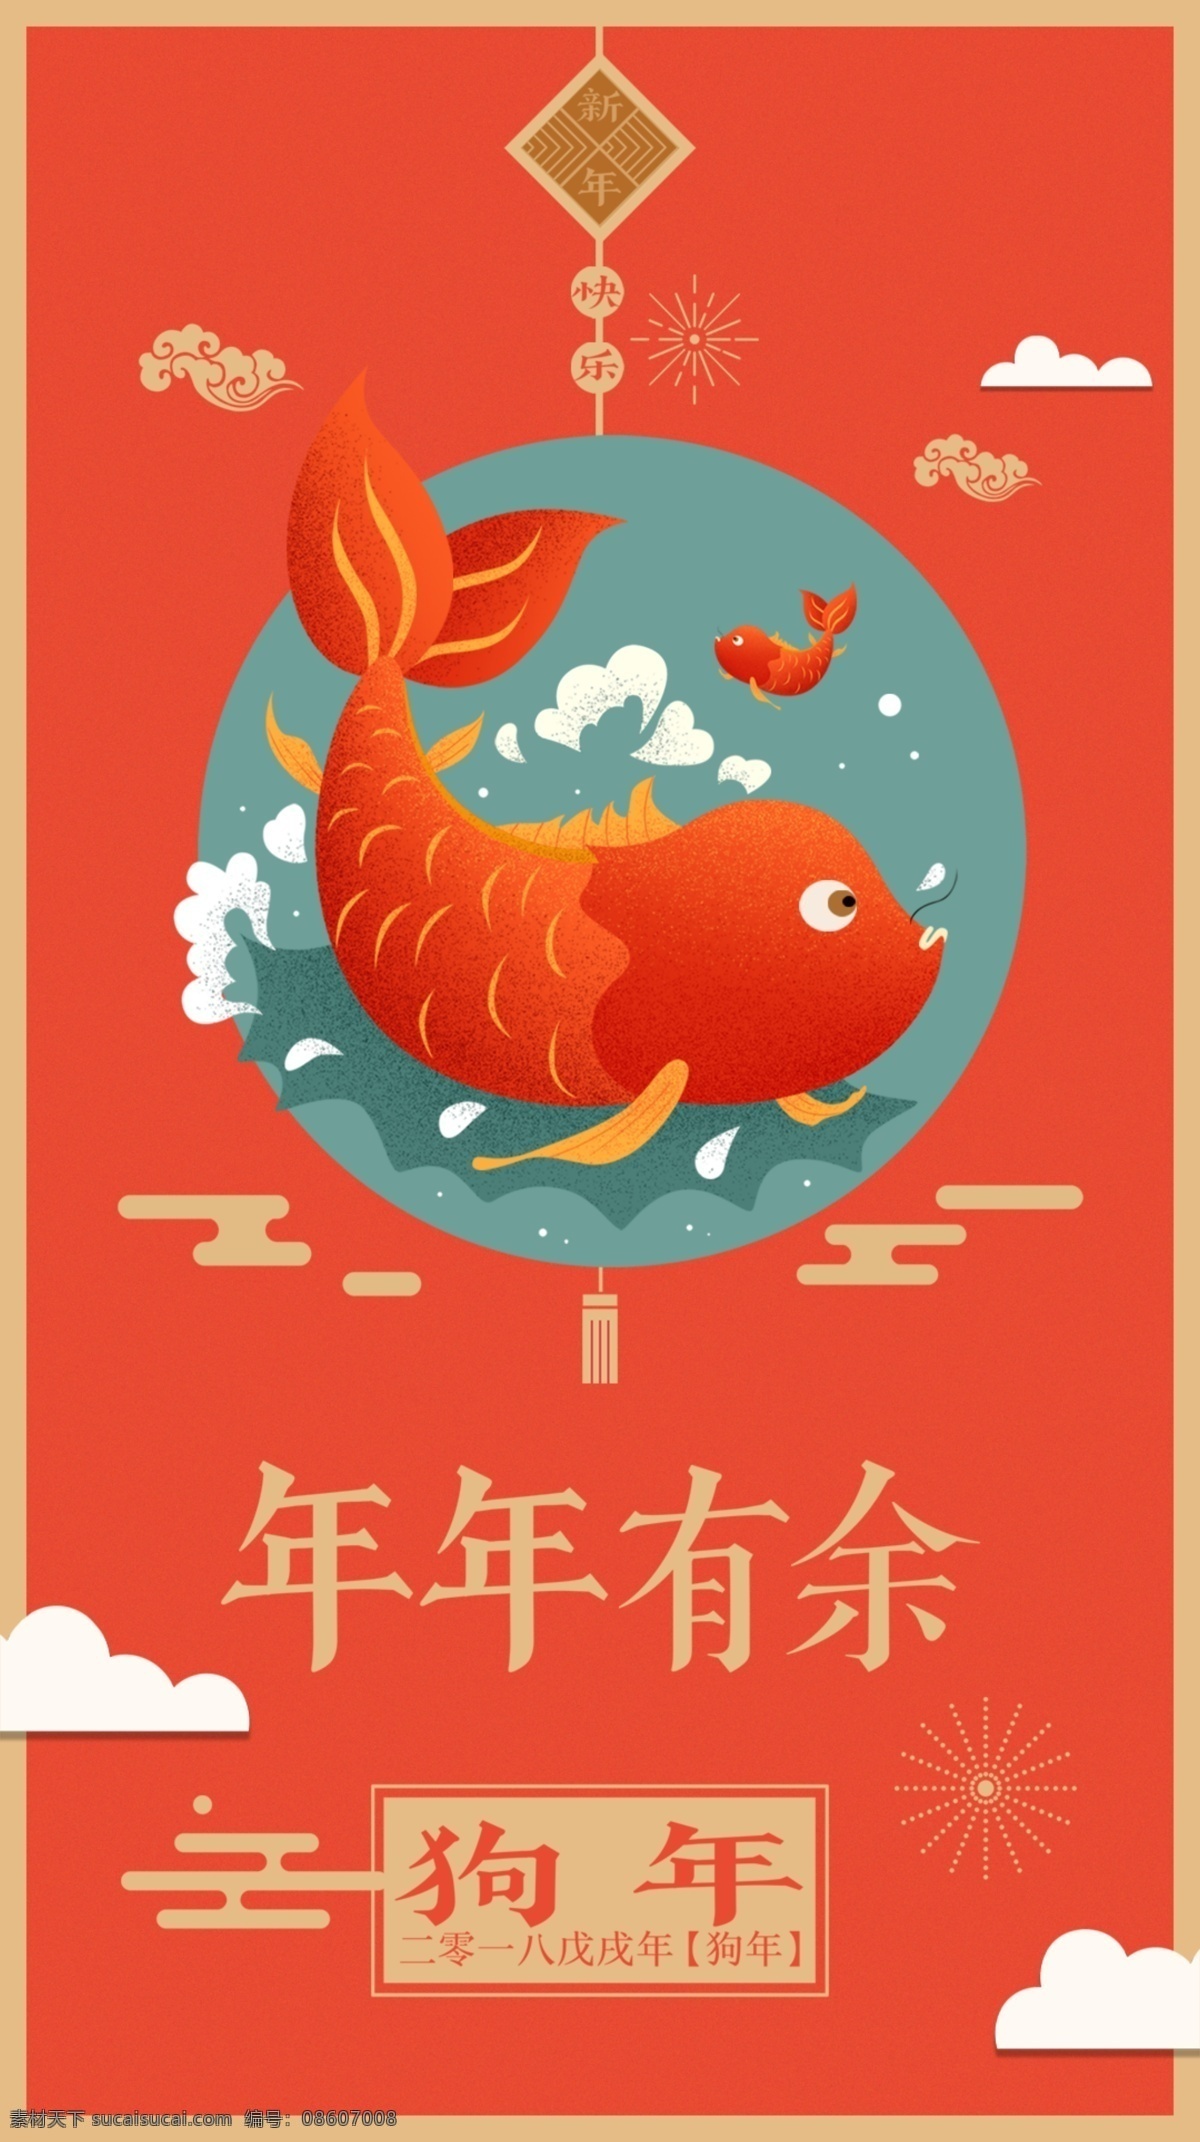 新年启动图 红鲤鱼 年年有余 新年快乐